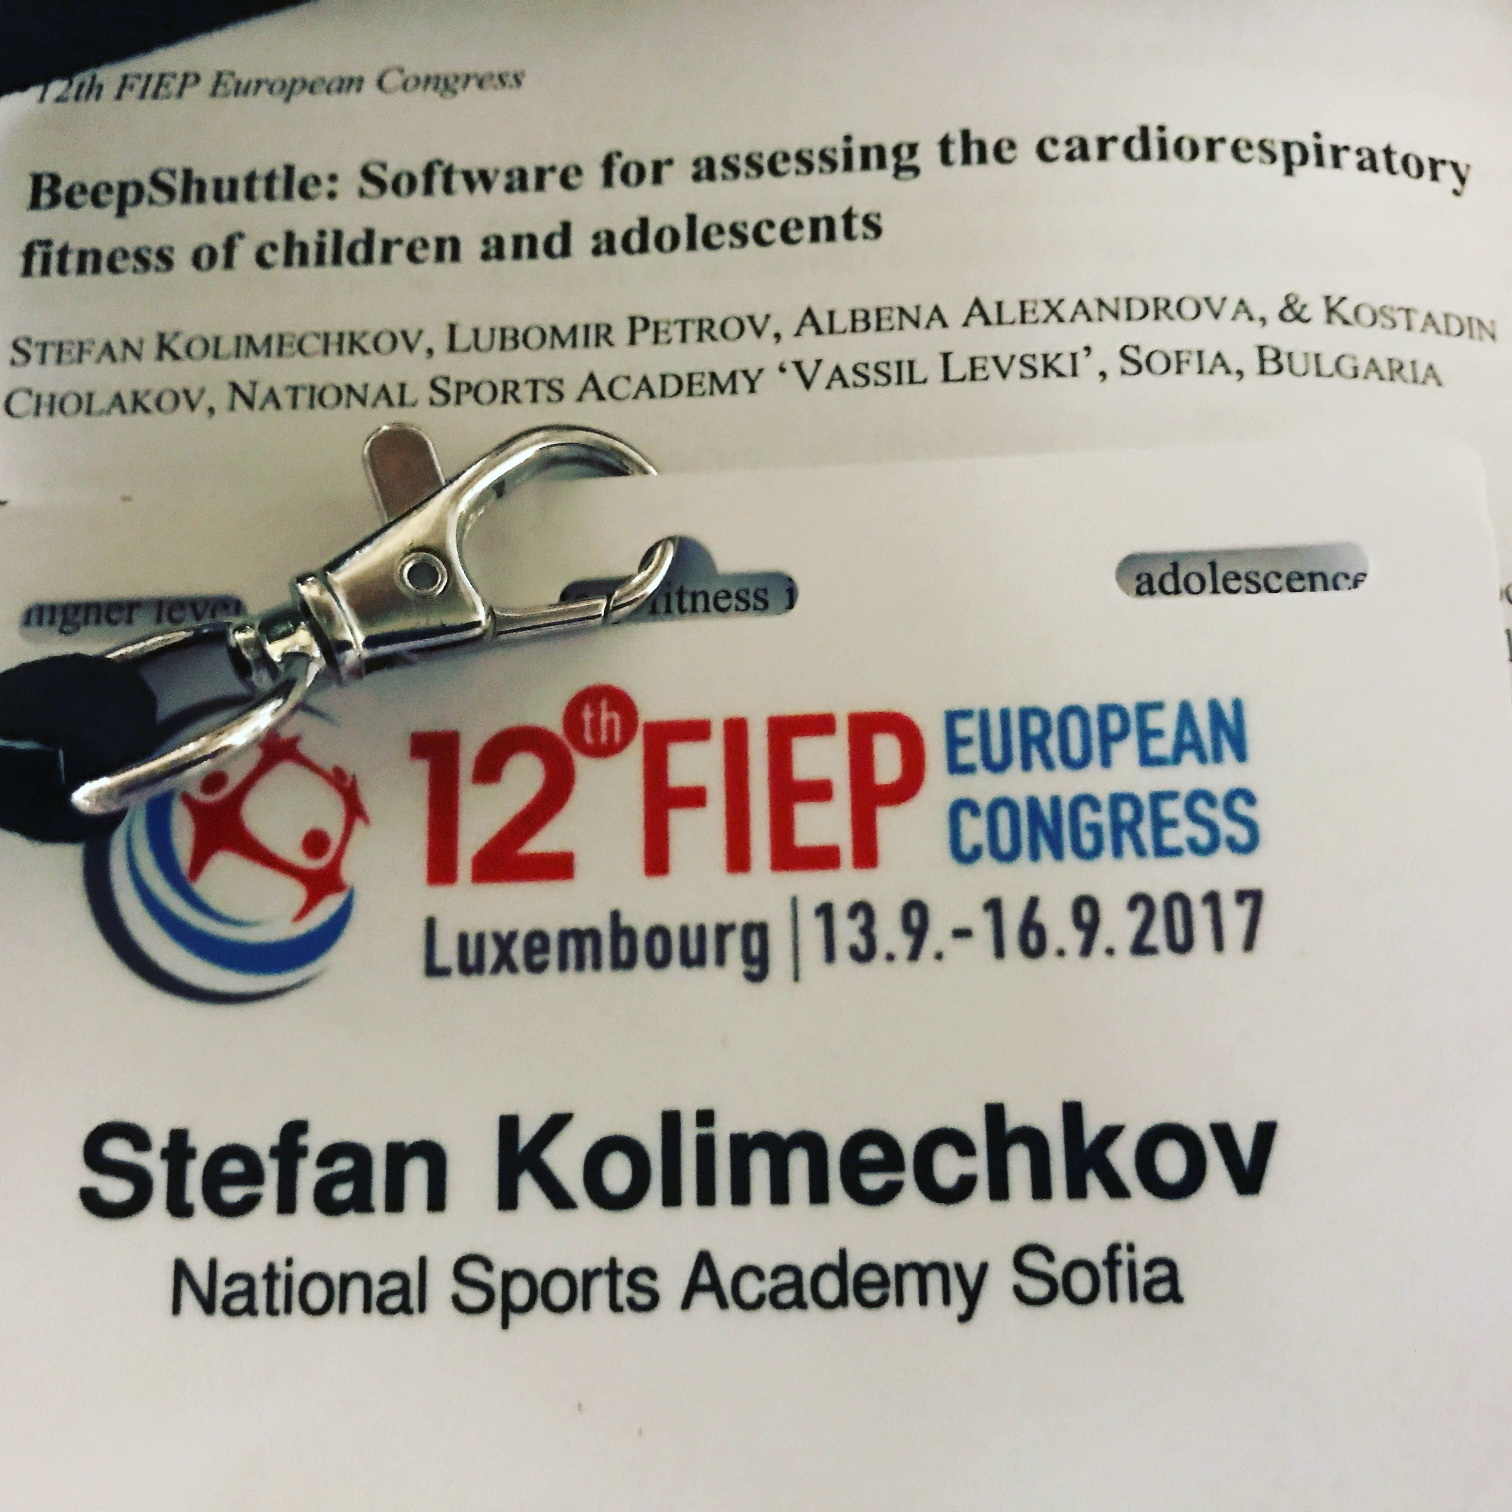 Stefan Todorov Kolimechkov - National Sports Academy, Sofia